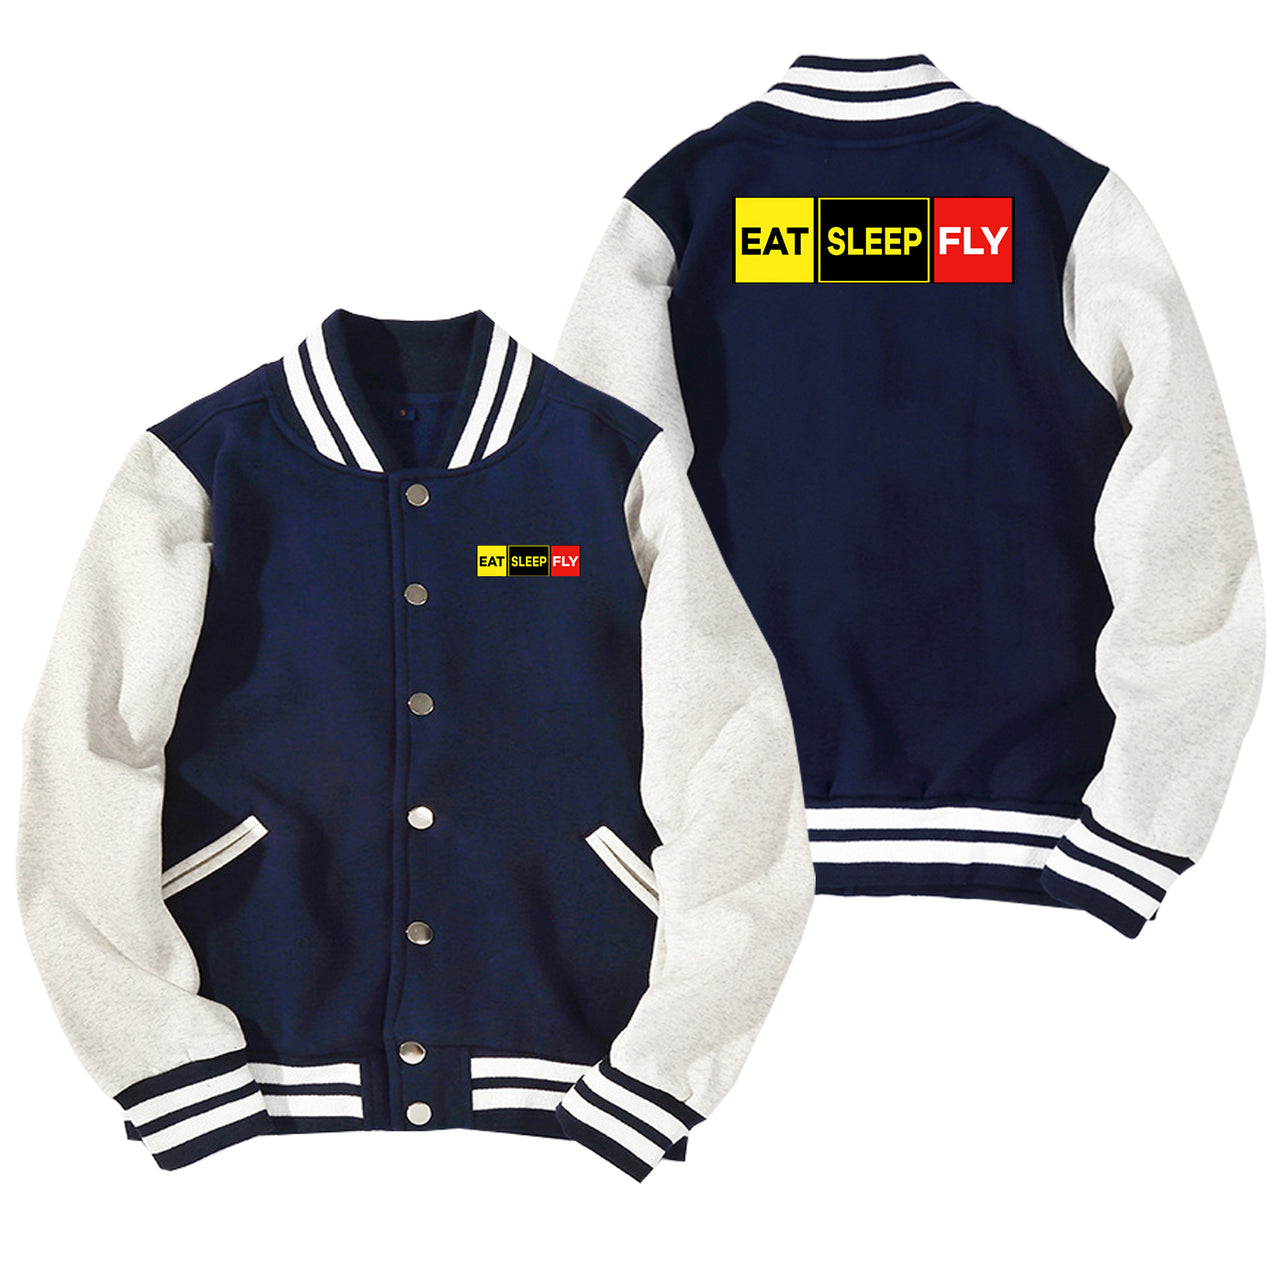 Eat Sleep Fly (Colourful) Designed Baseball Style Jackets